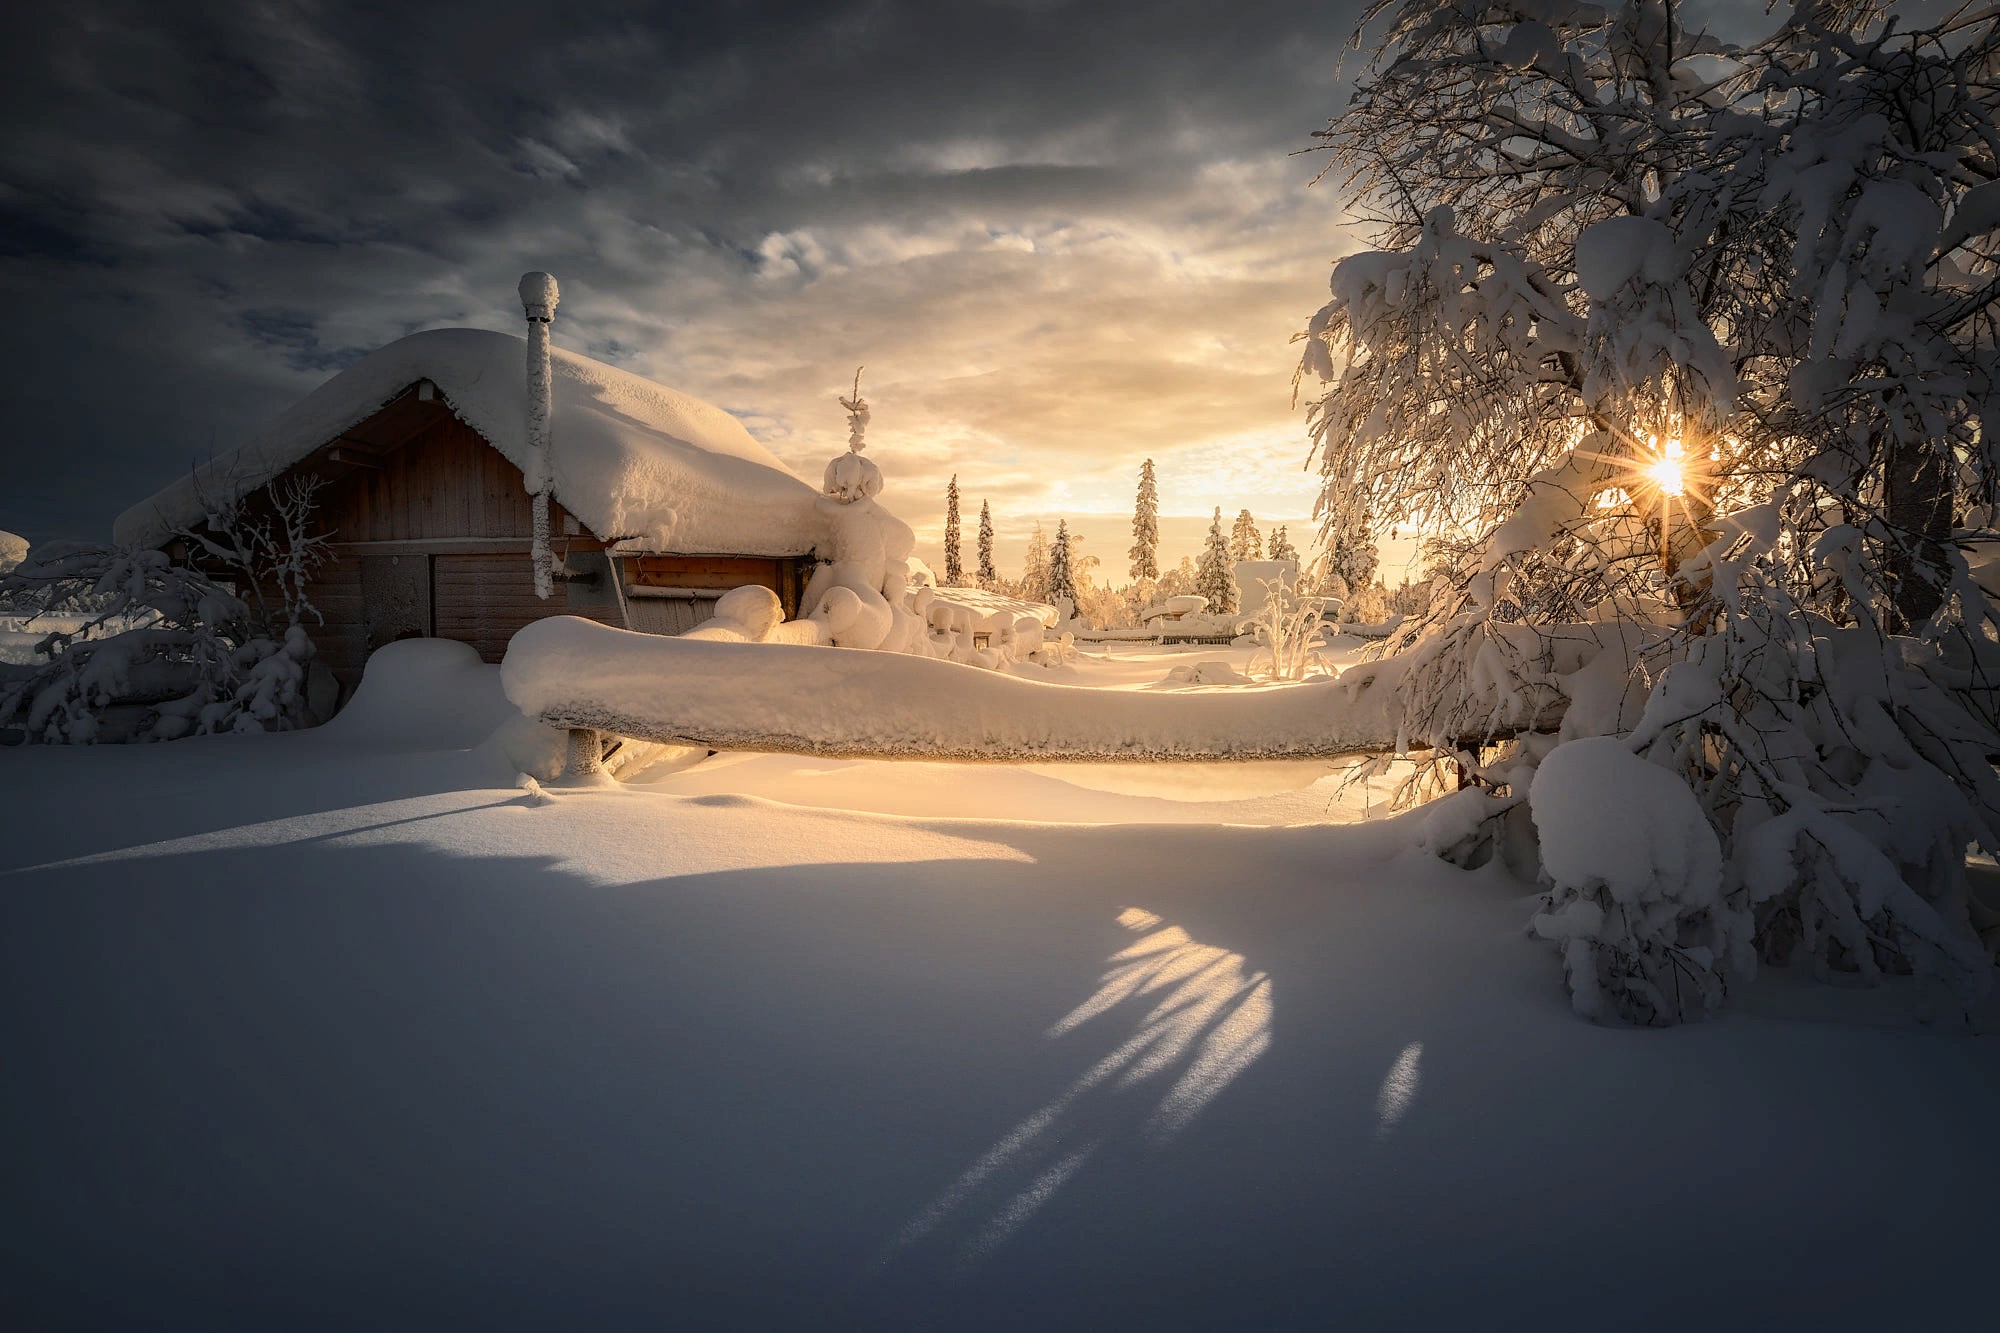 Скачать обои бесплатно Зима, Природа, Снег, Дом, Фотографии, Солнечный Луч картинка на рабочий стол ПК